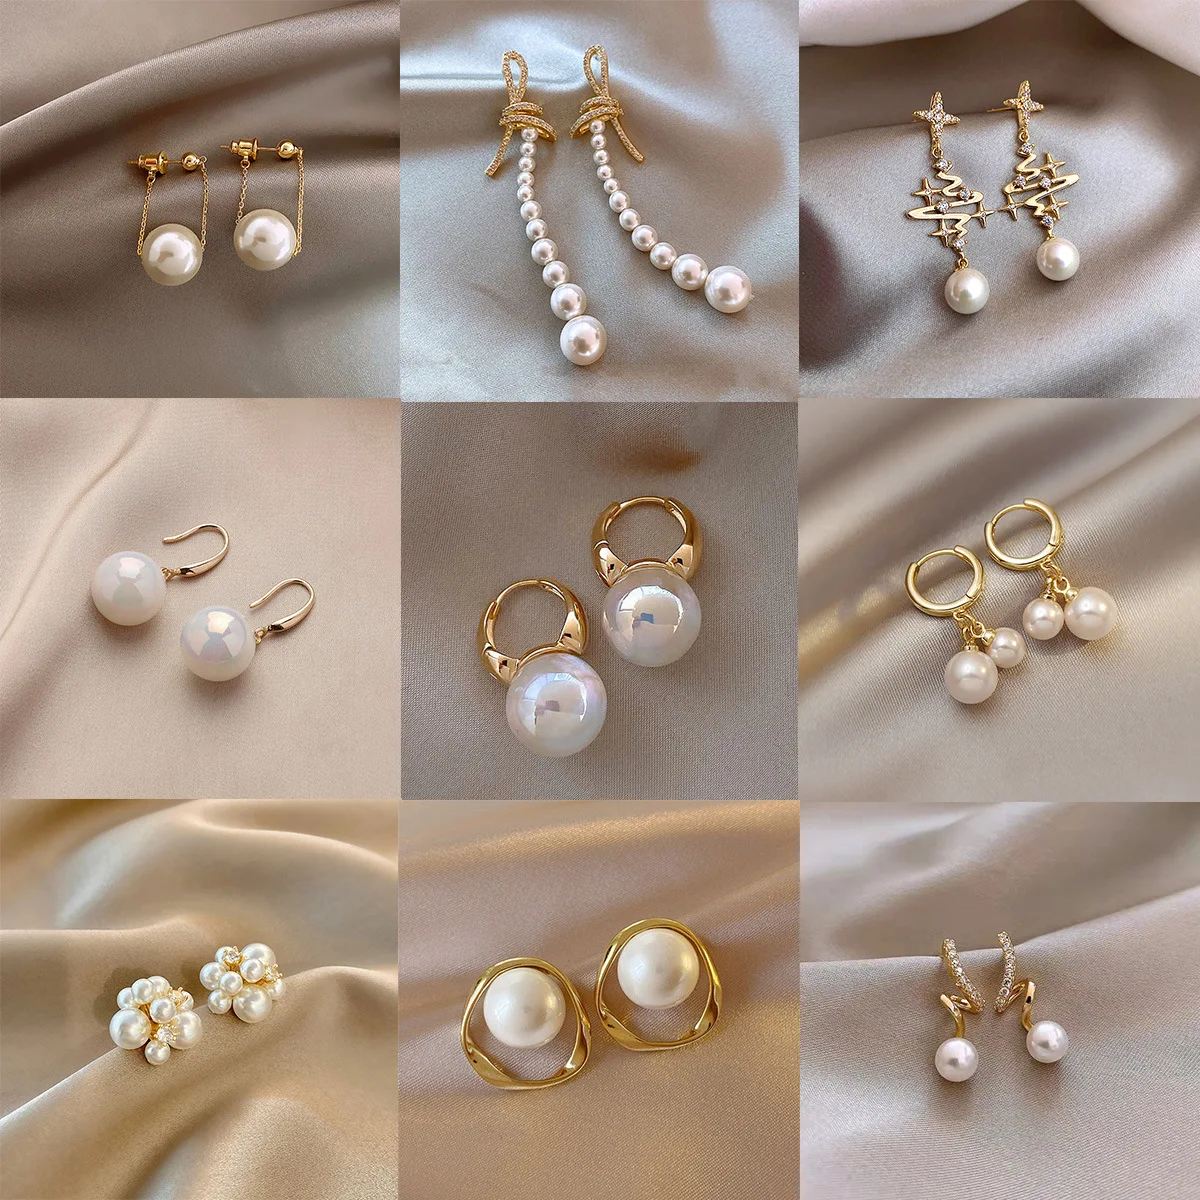 Pearl Earrings Colorful Mermaid Ji Flower Long Tassel Earring For Personality Women Gold Color Ear Buckle Fashion Jewelry Gifts